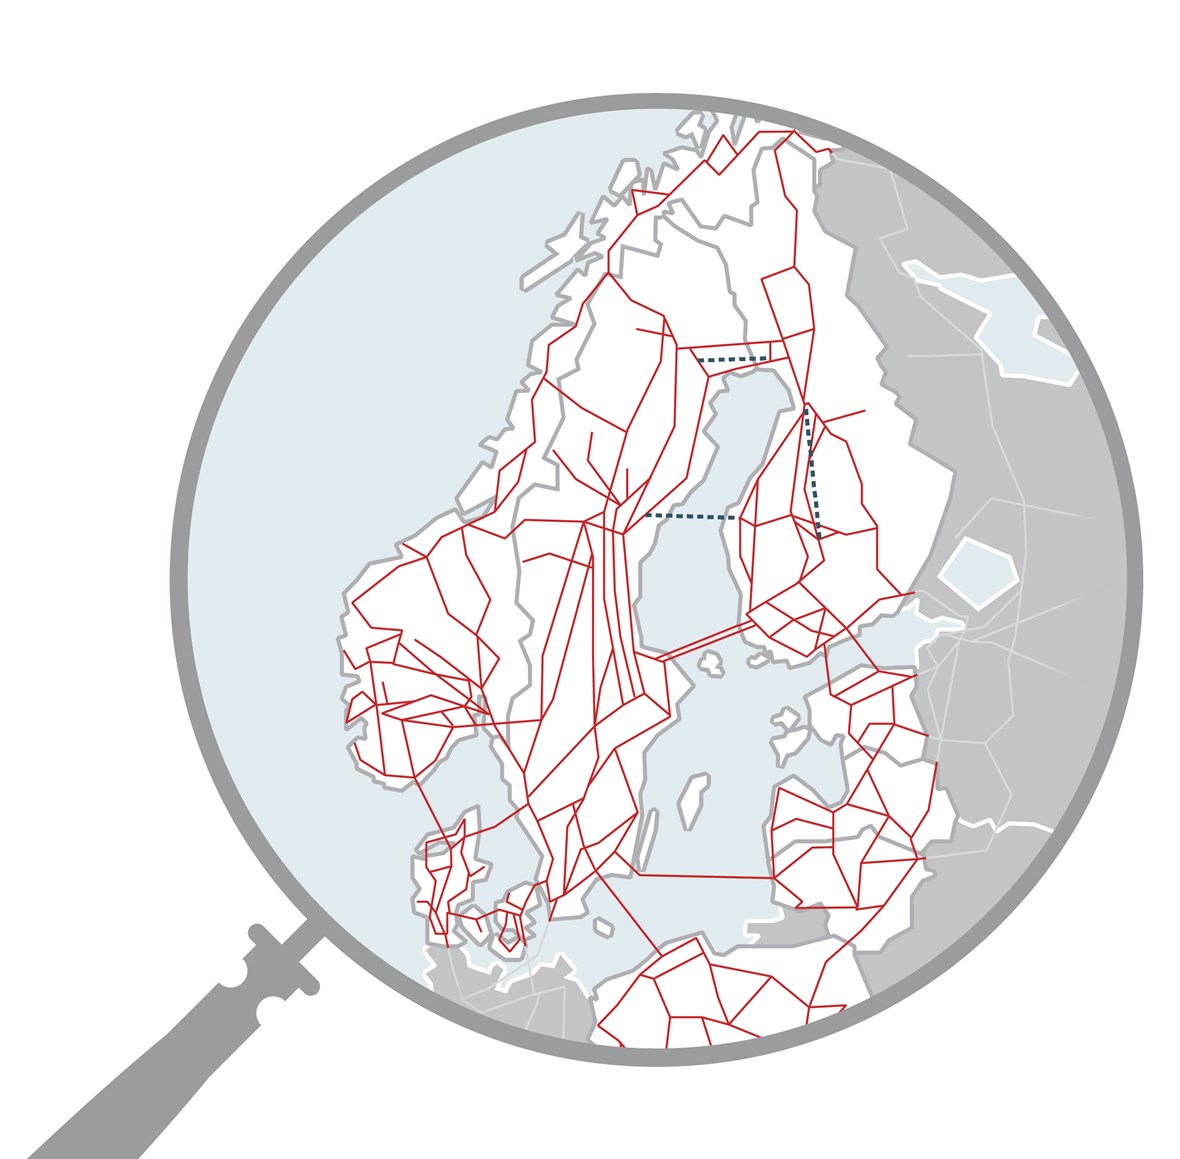 Pohjoismainen sähköjärjestelmä ja liitynnät muihin järjestelmiin - Fingrid